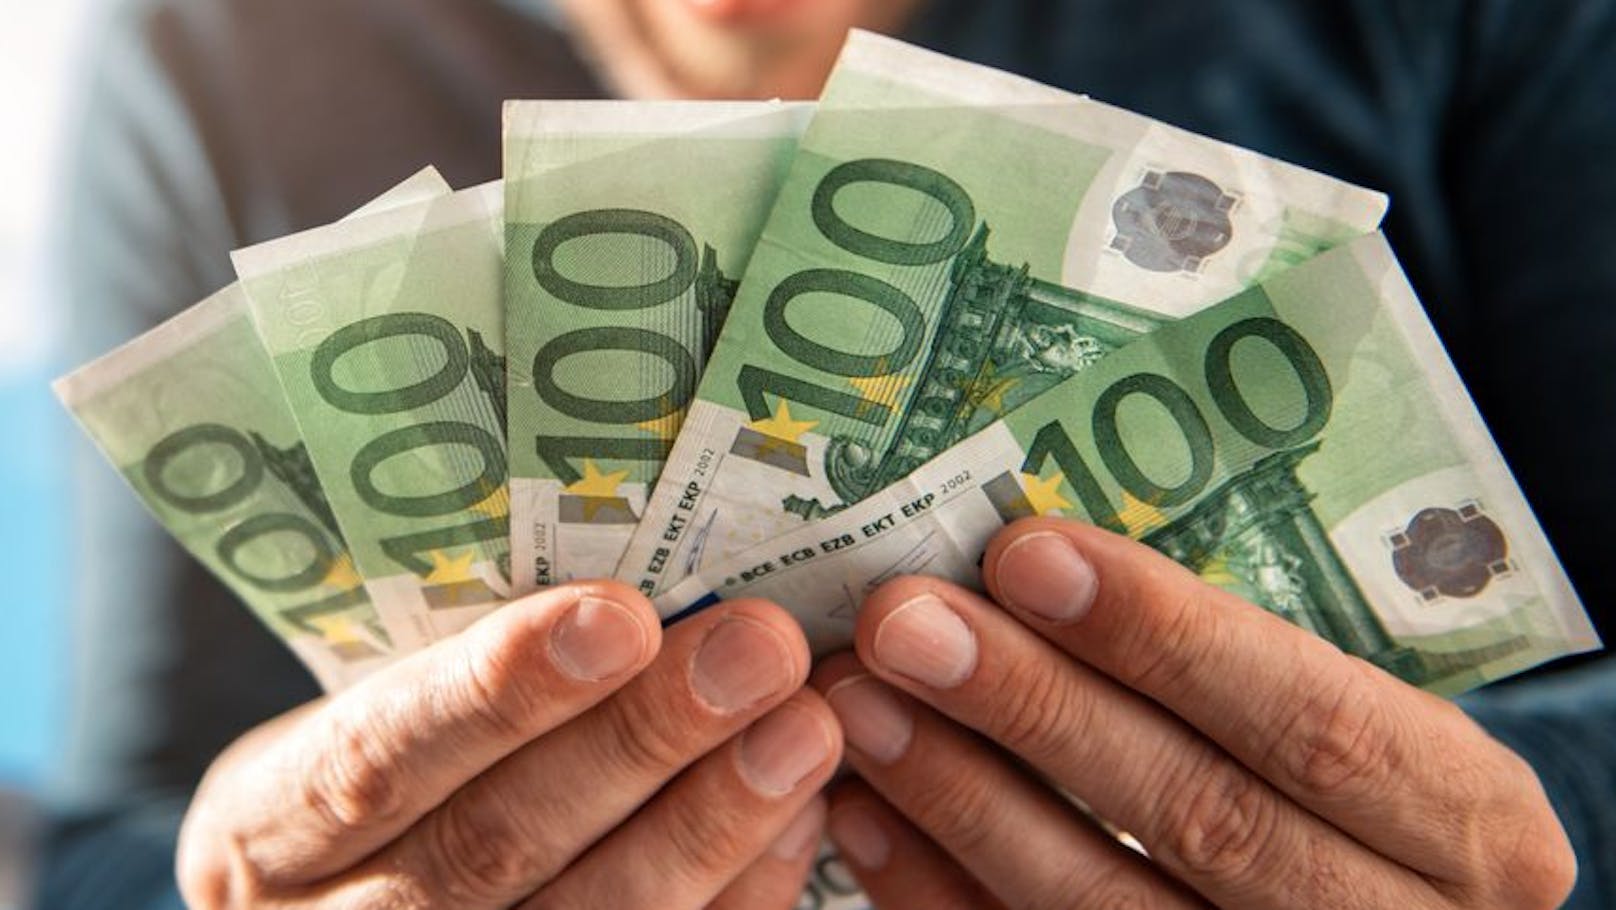 Finanz fordert jetzt von Zehntausenden 500 Euro zurück